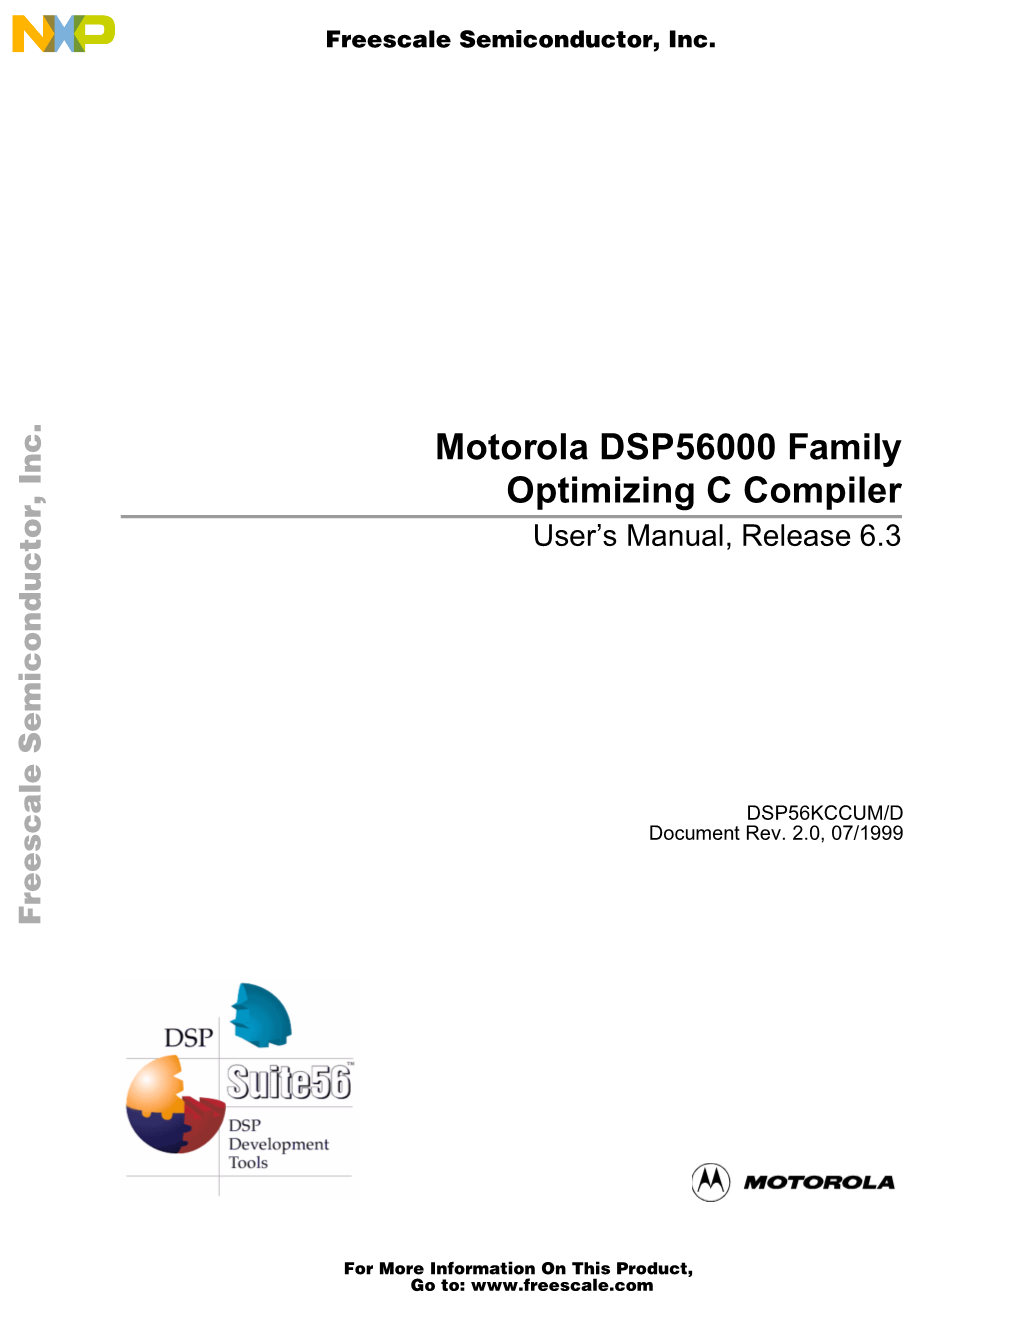 Motorola DSP56000 Family Optimizing C Compiler User’S Manual Motorola